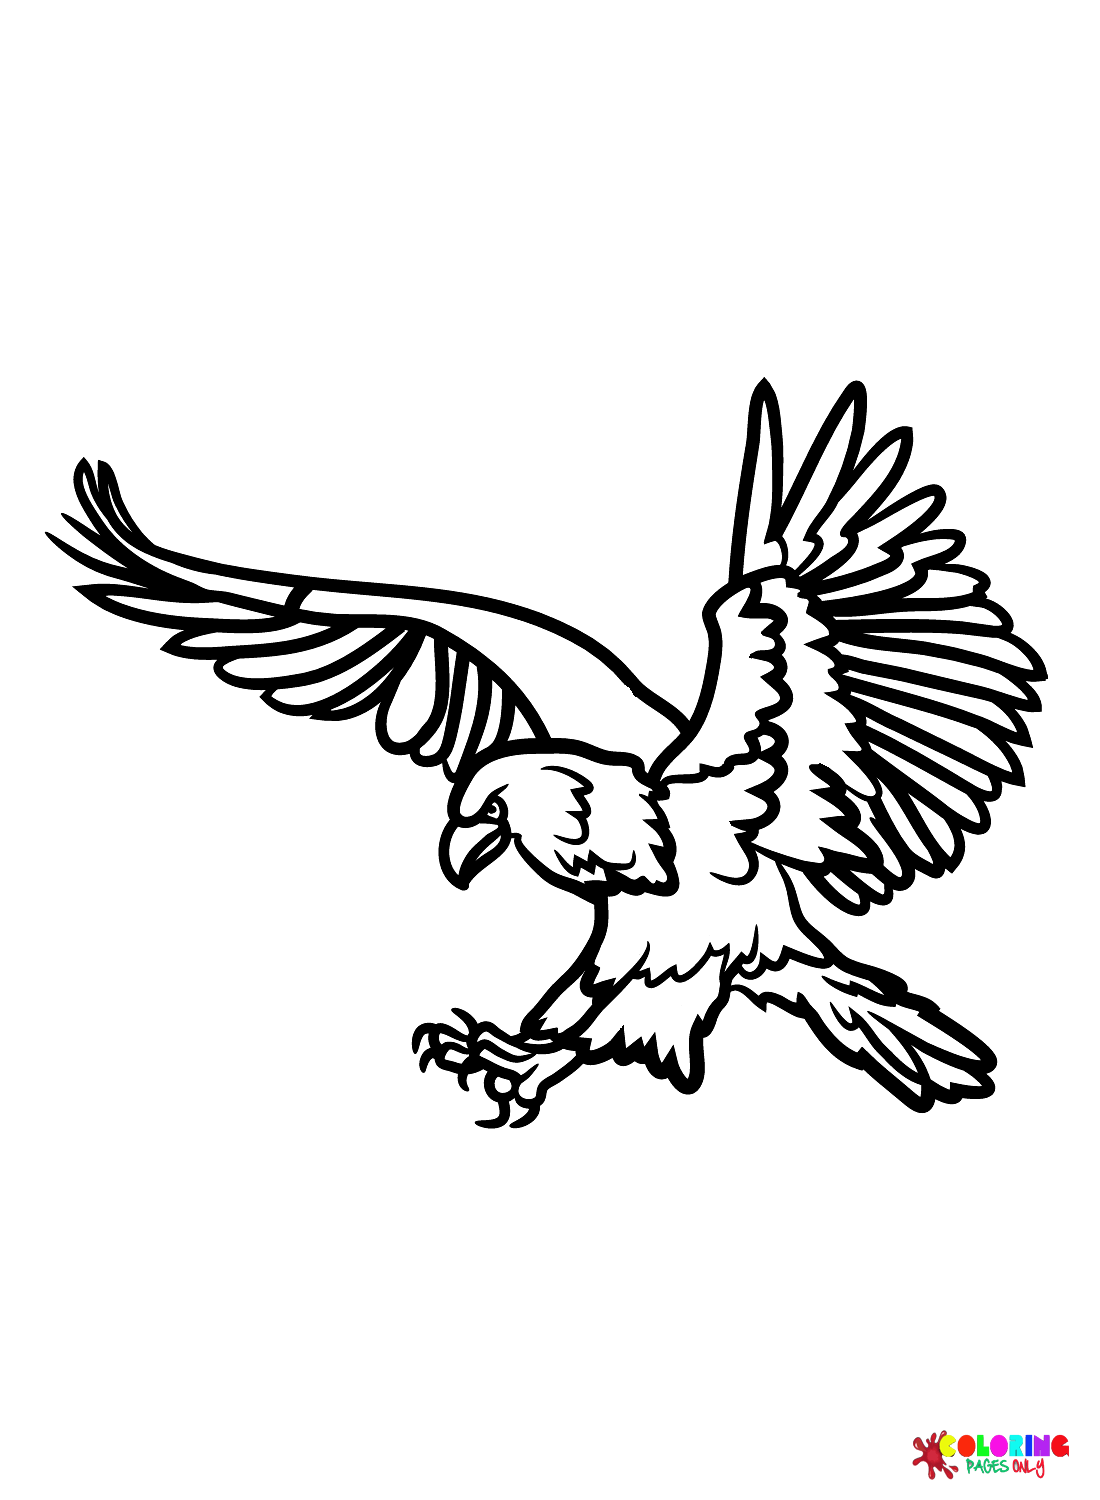 Halcones aterrizados de halcones